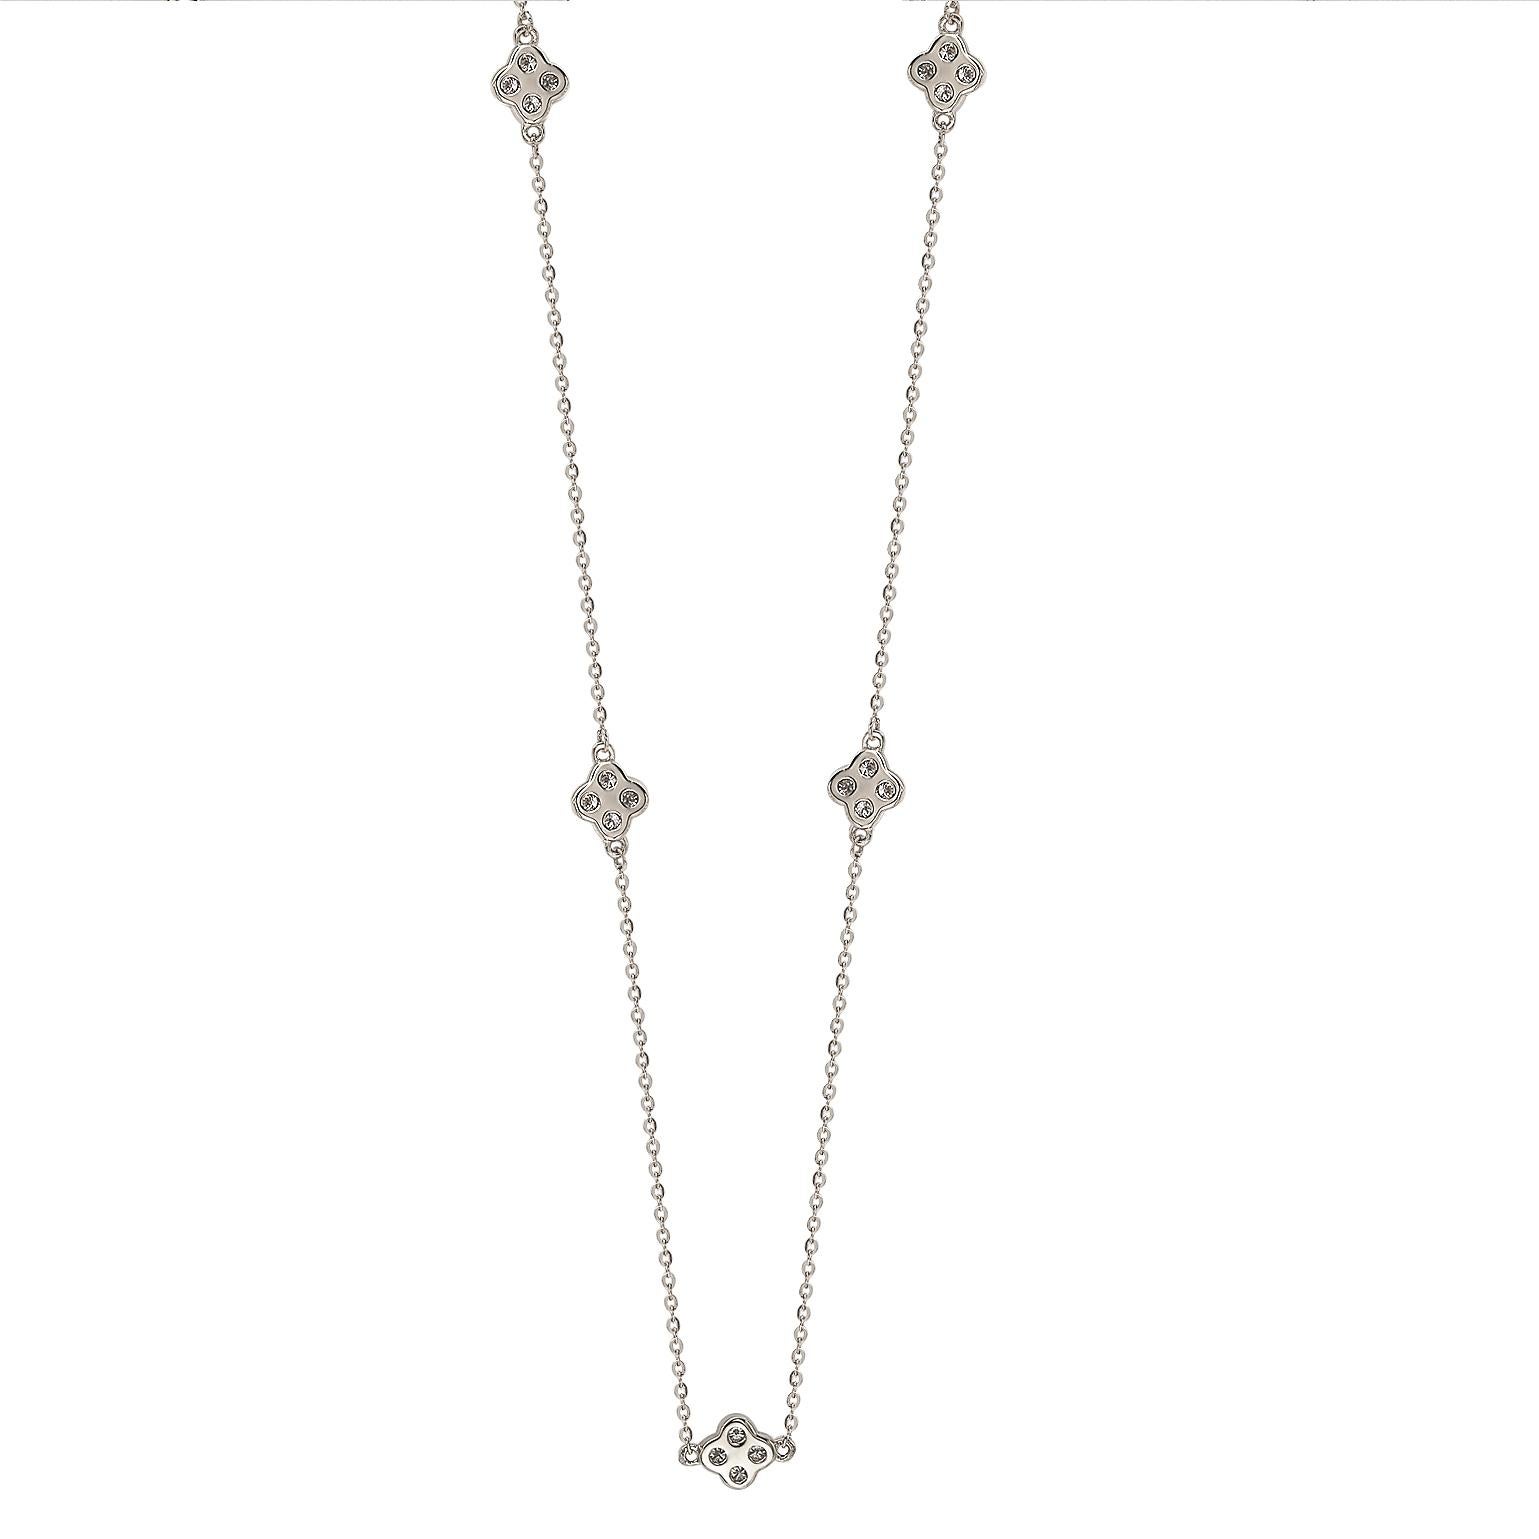 Ce collier unique Suzy Levian en forme de trèfle en diamants par mètre présente des diamants de taille ronde sur une monture en or blanc 14 carats. Ce magnifique collier contient 20 diamants blancs ronds de 1,75 mm de diamètre pour un total de 0,40